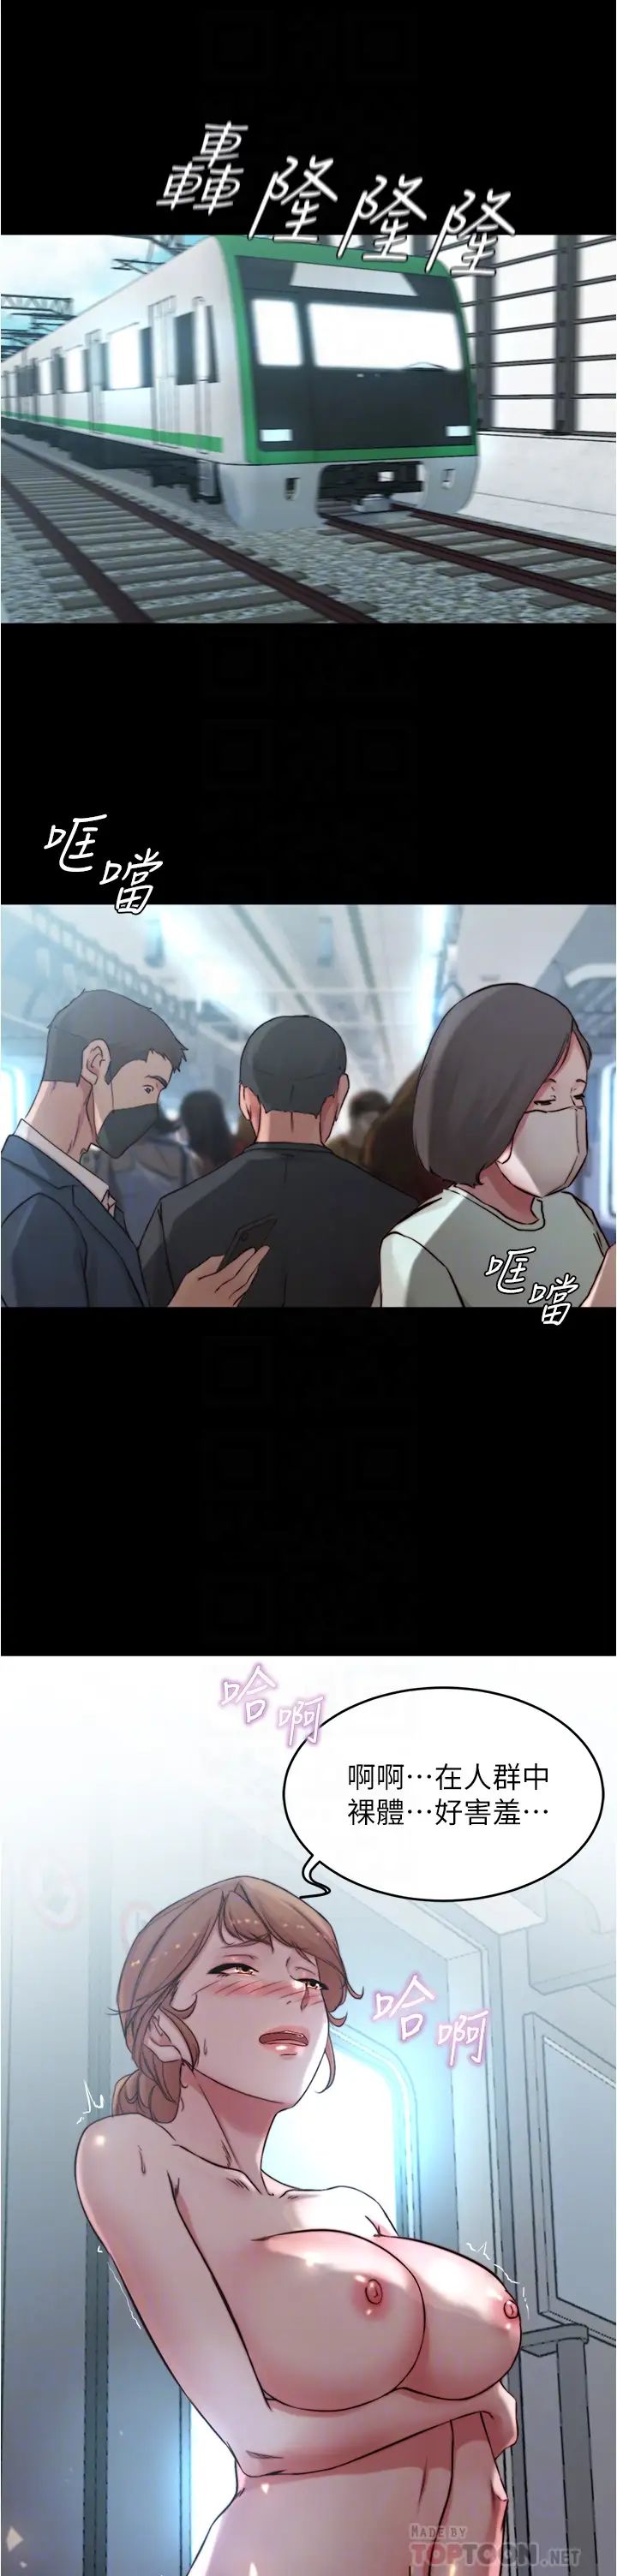 韩国污漫画 小褲褲筆記 第60话 用火车便当式高潮的恩美 6